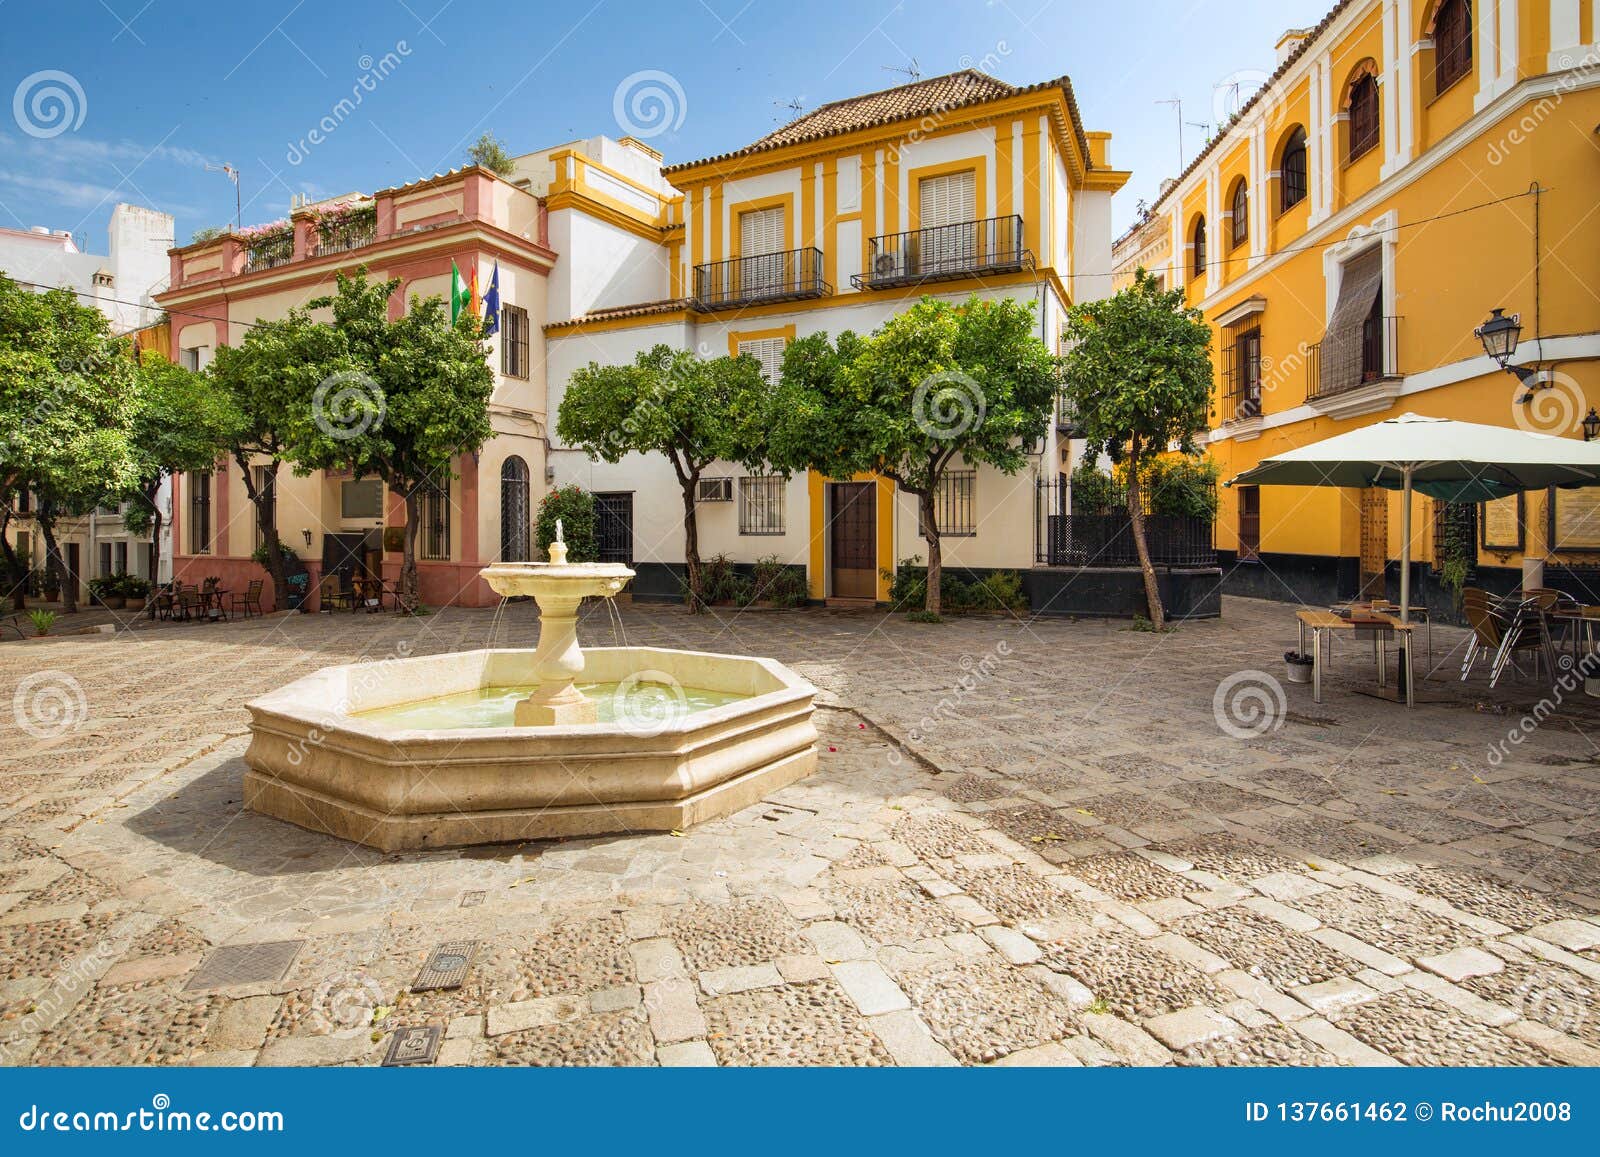 sevilla in andalusia, spain - architecture barrio santa cruz district